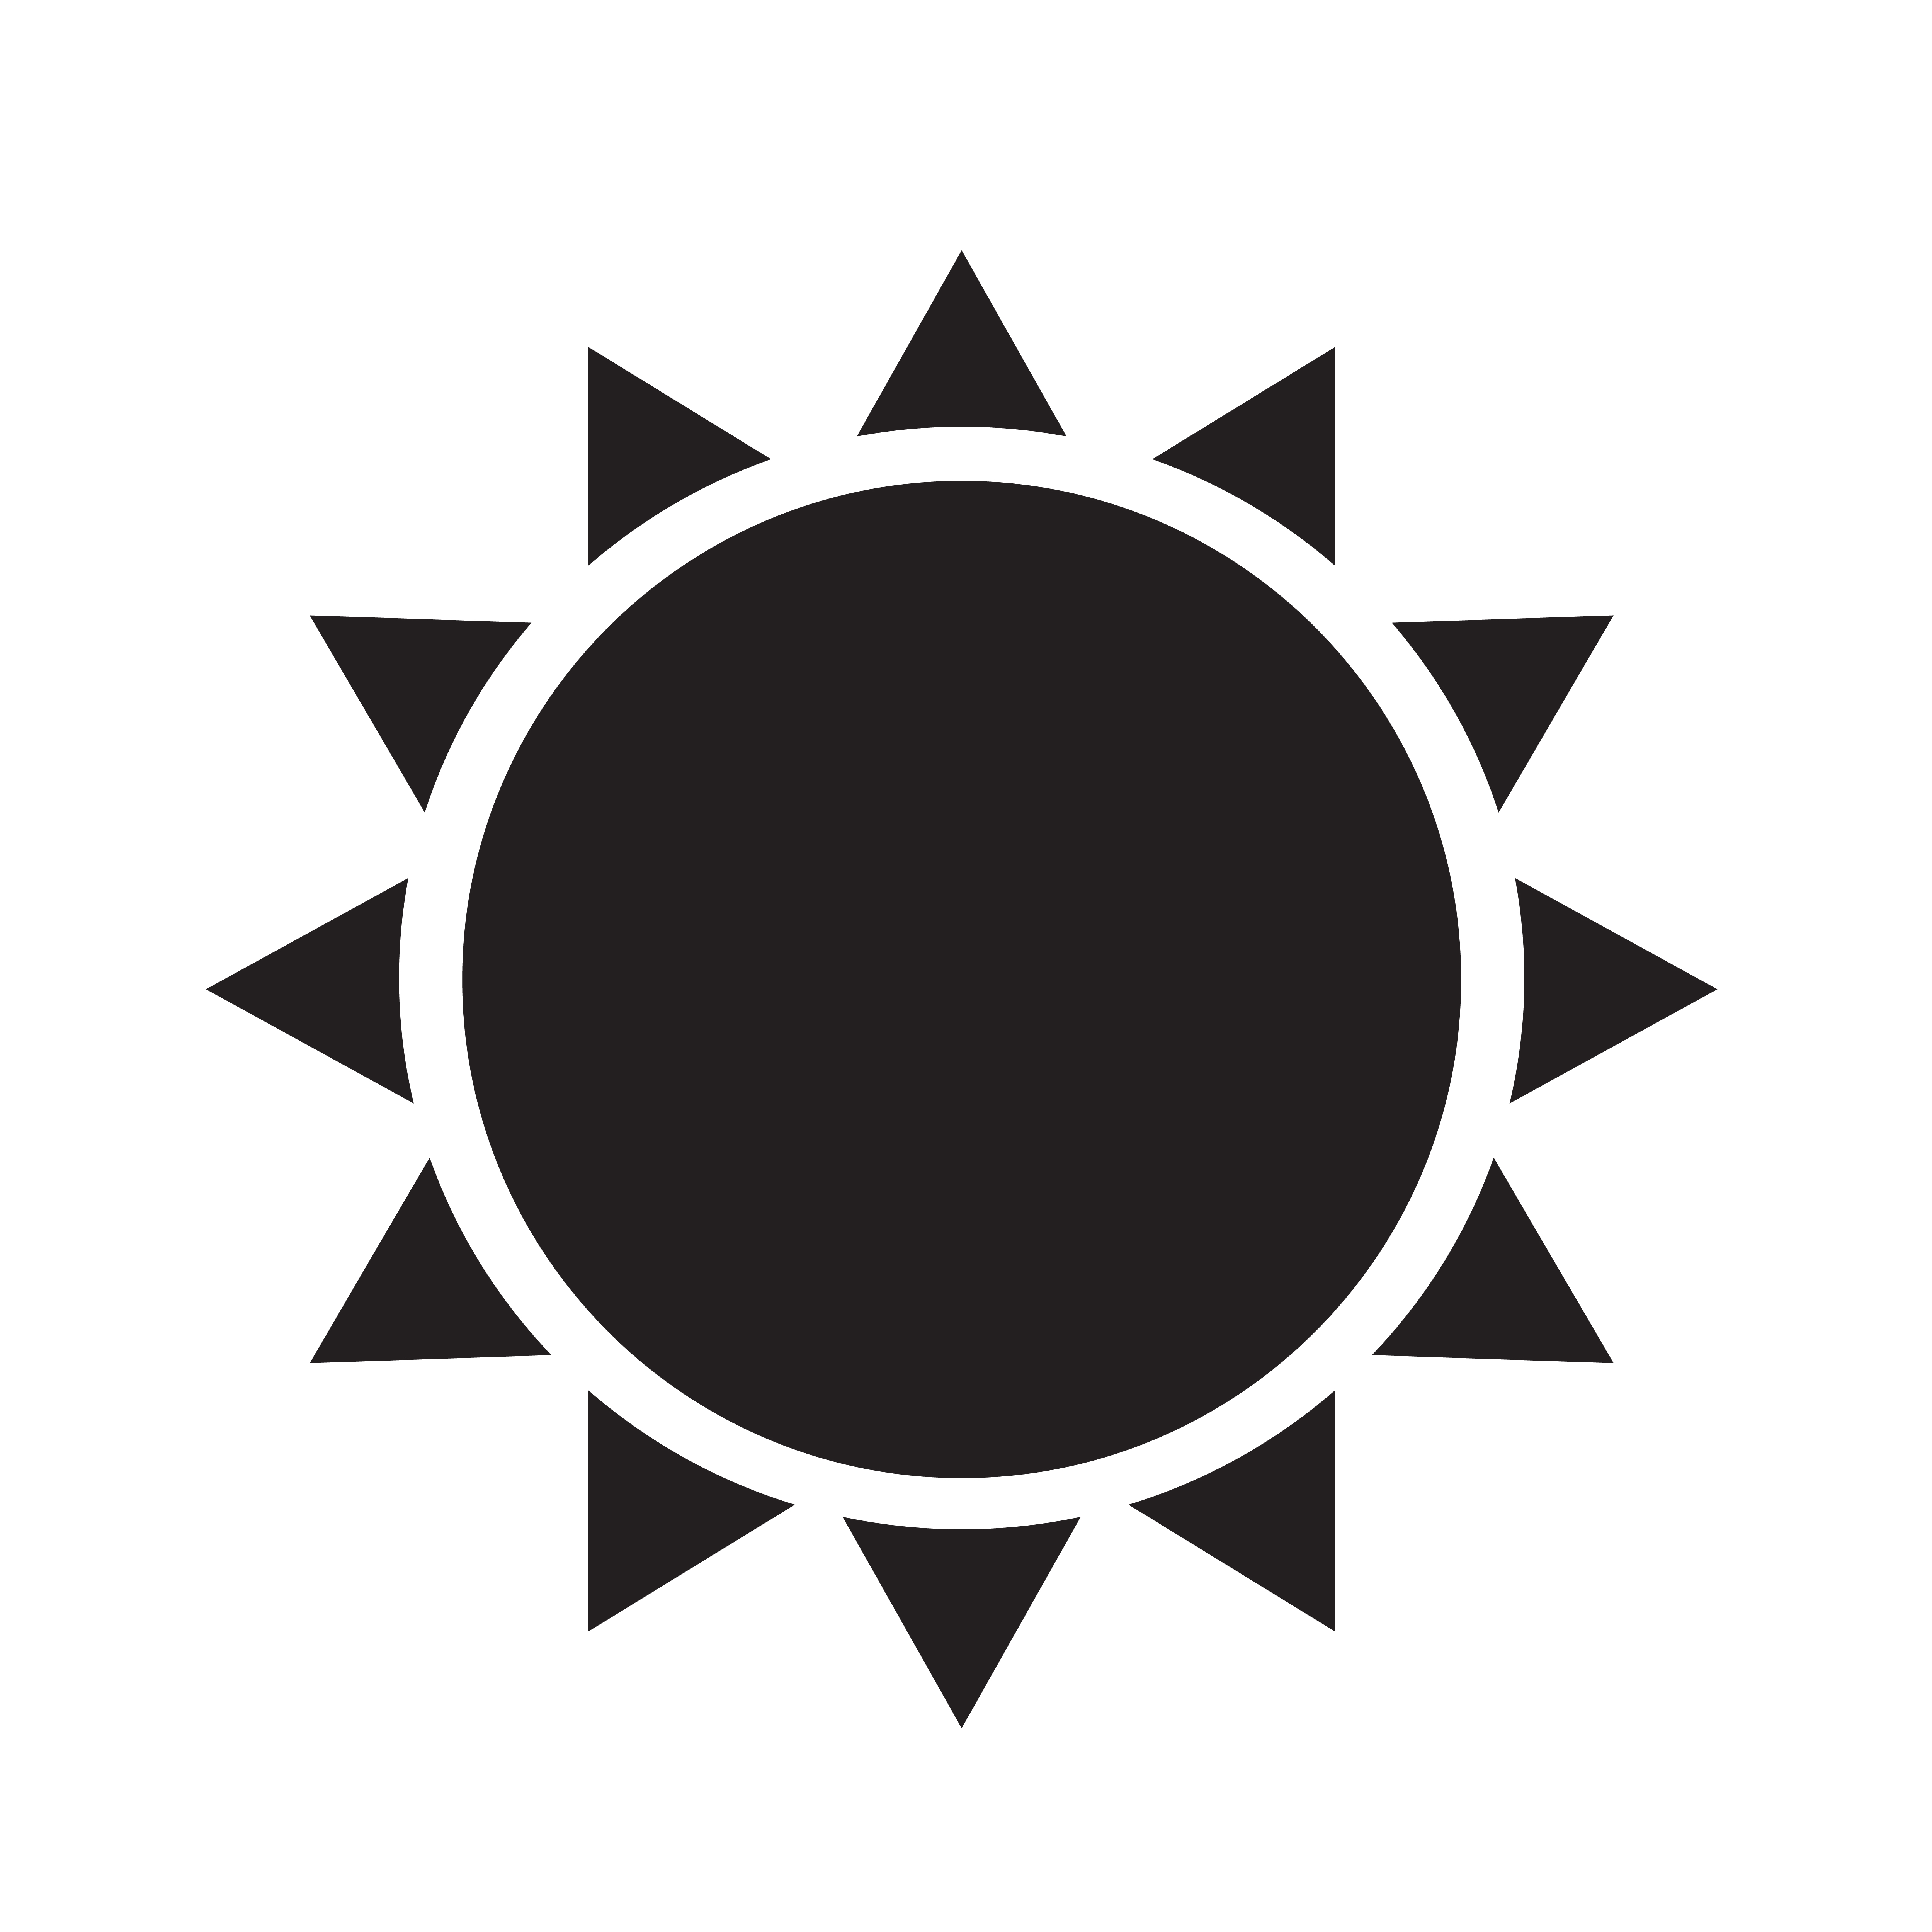  Sun Icon  symbol  sign Download Free Vectors Clipart 